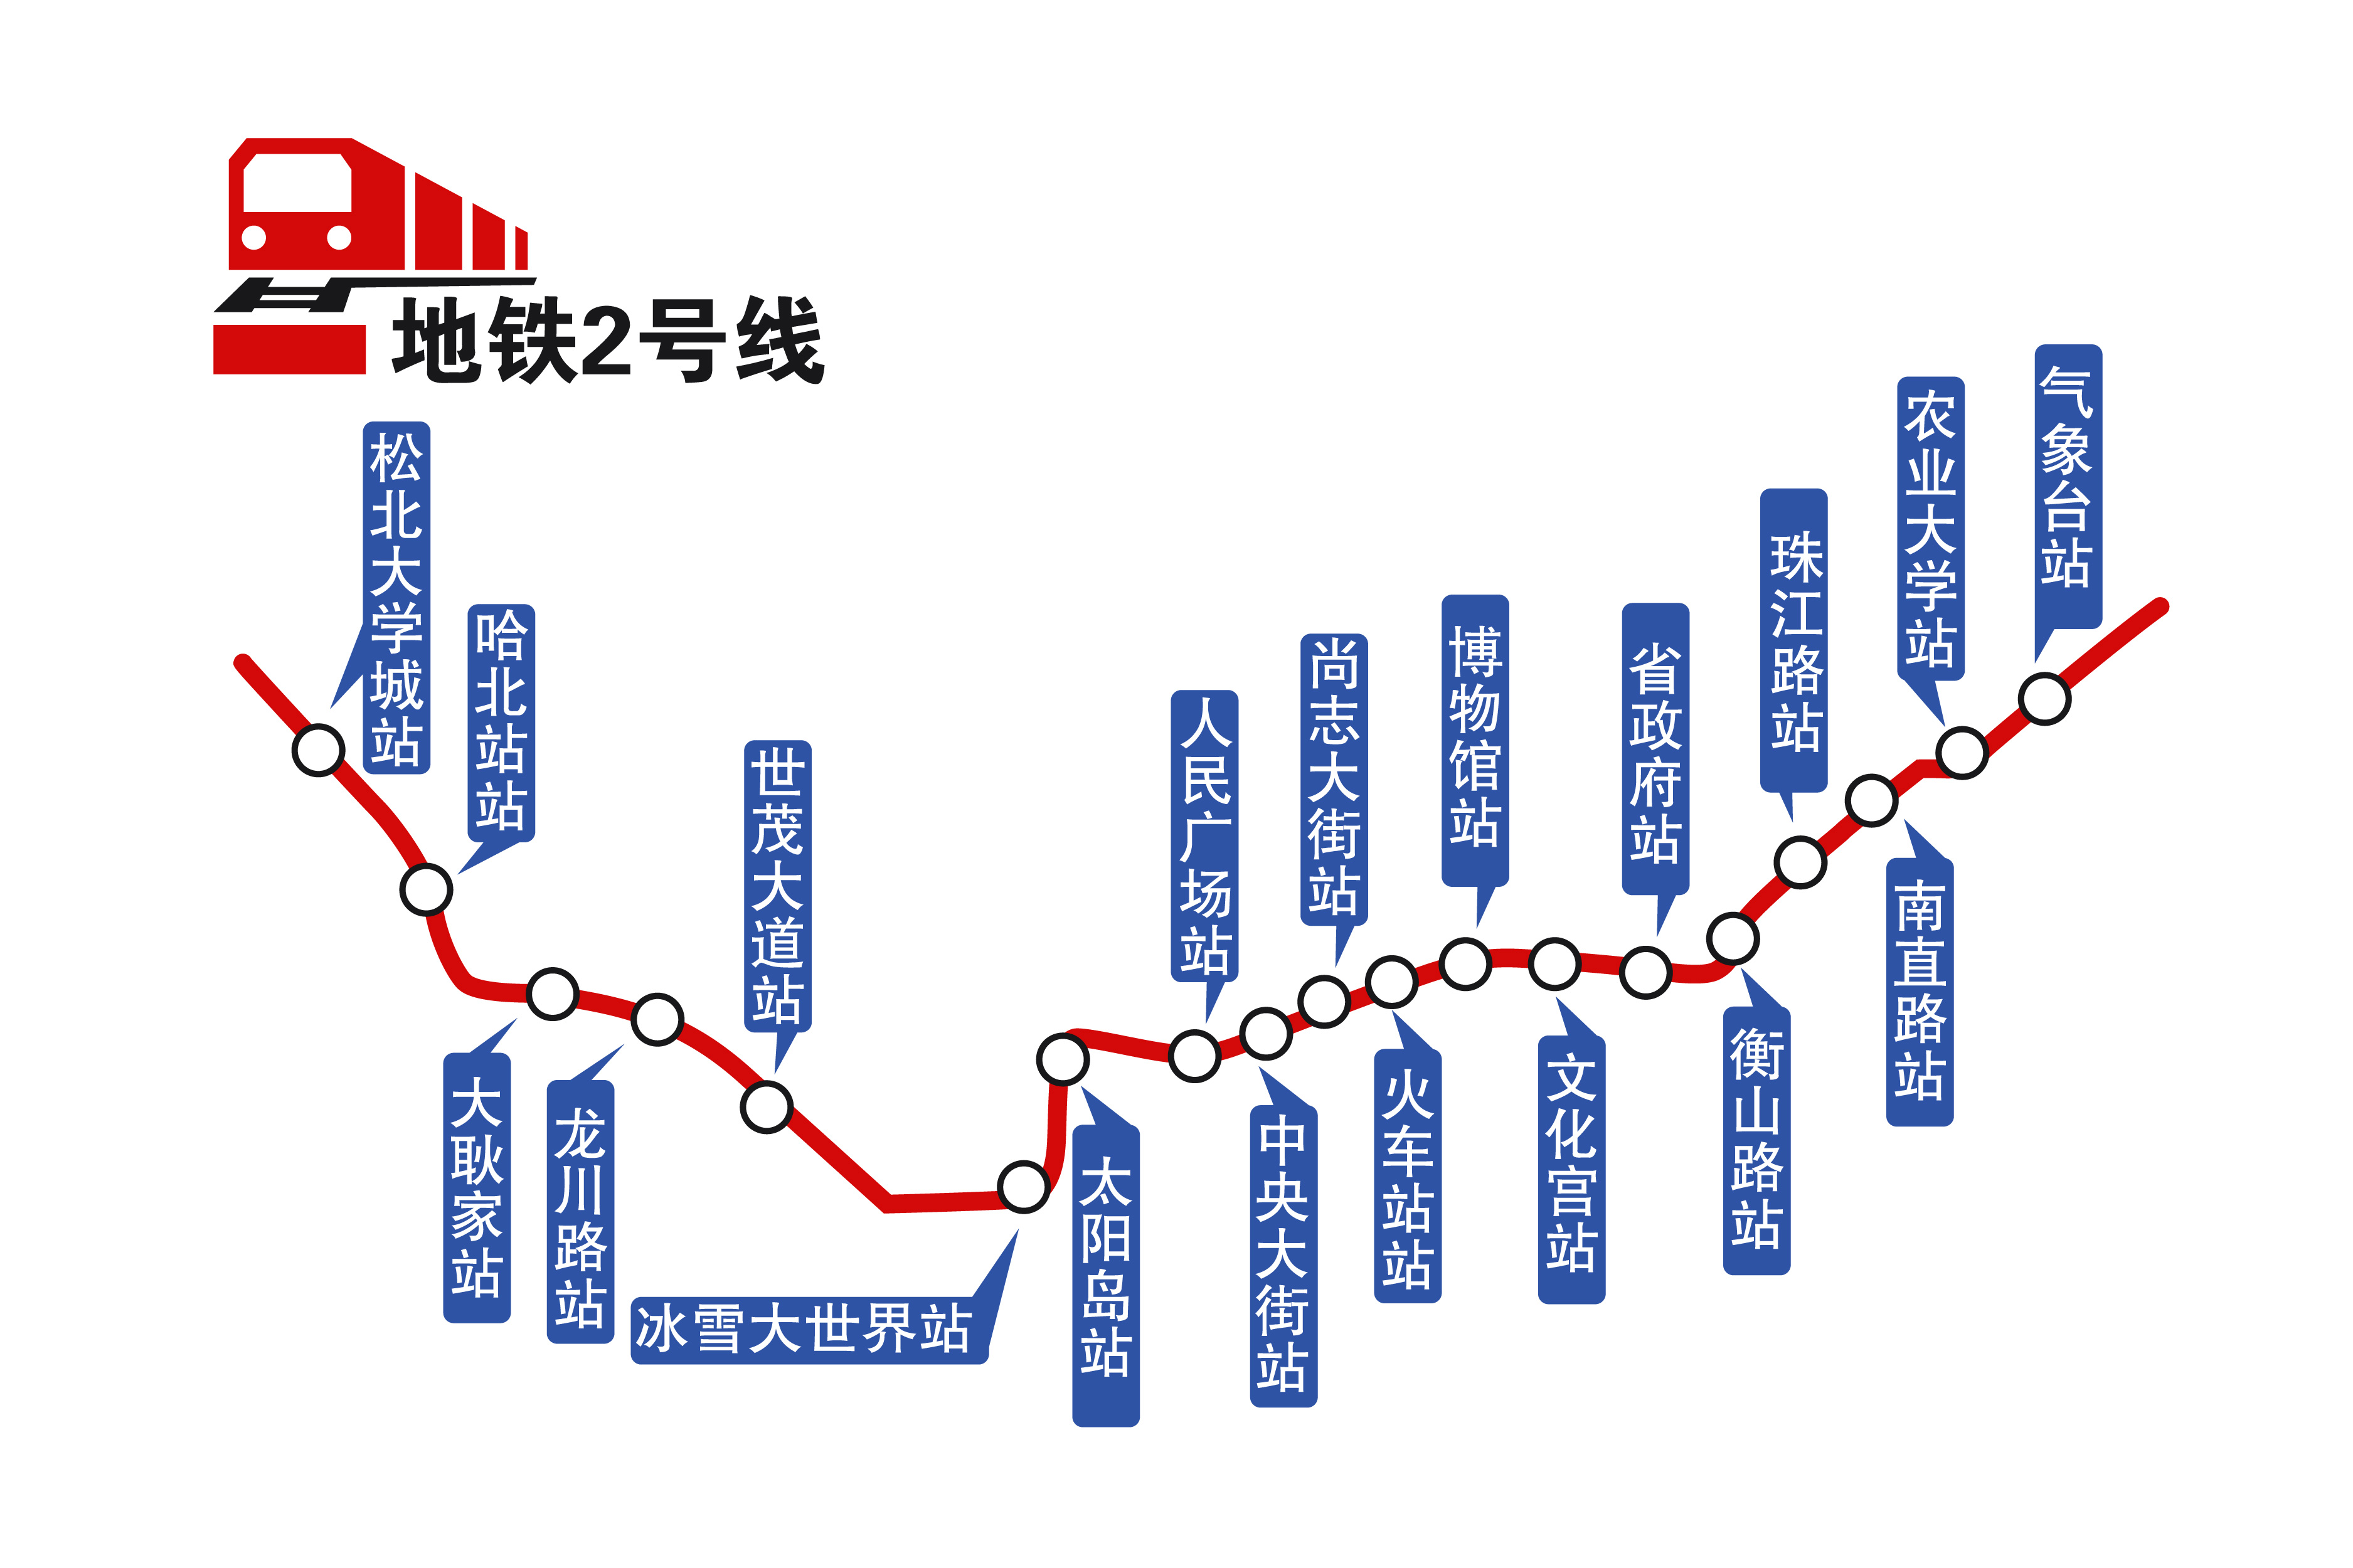 3分钟过江地铁2号线引领哈尔滨新区发展新格局